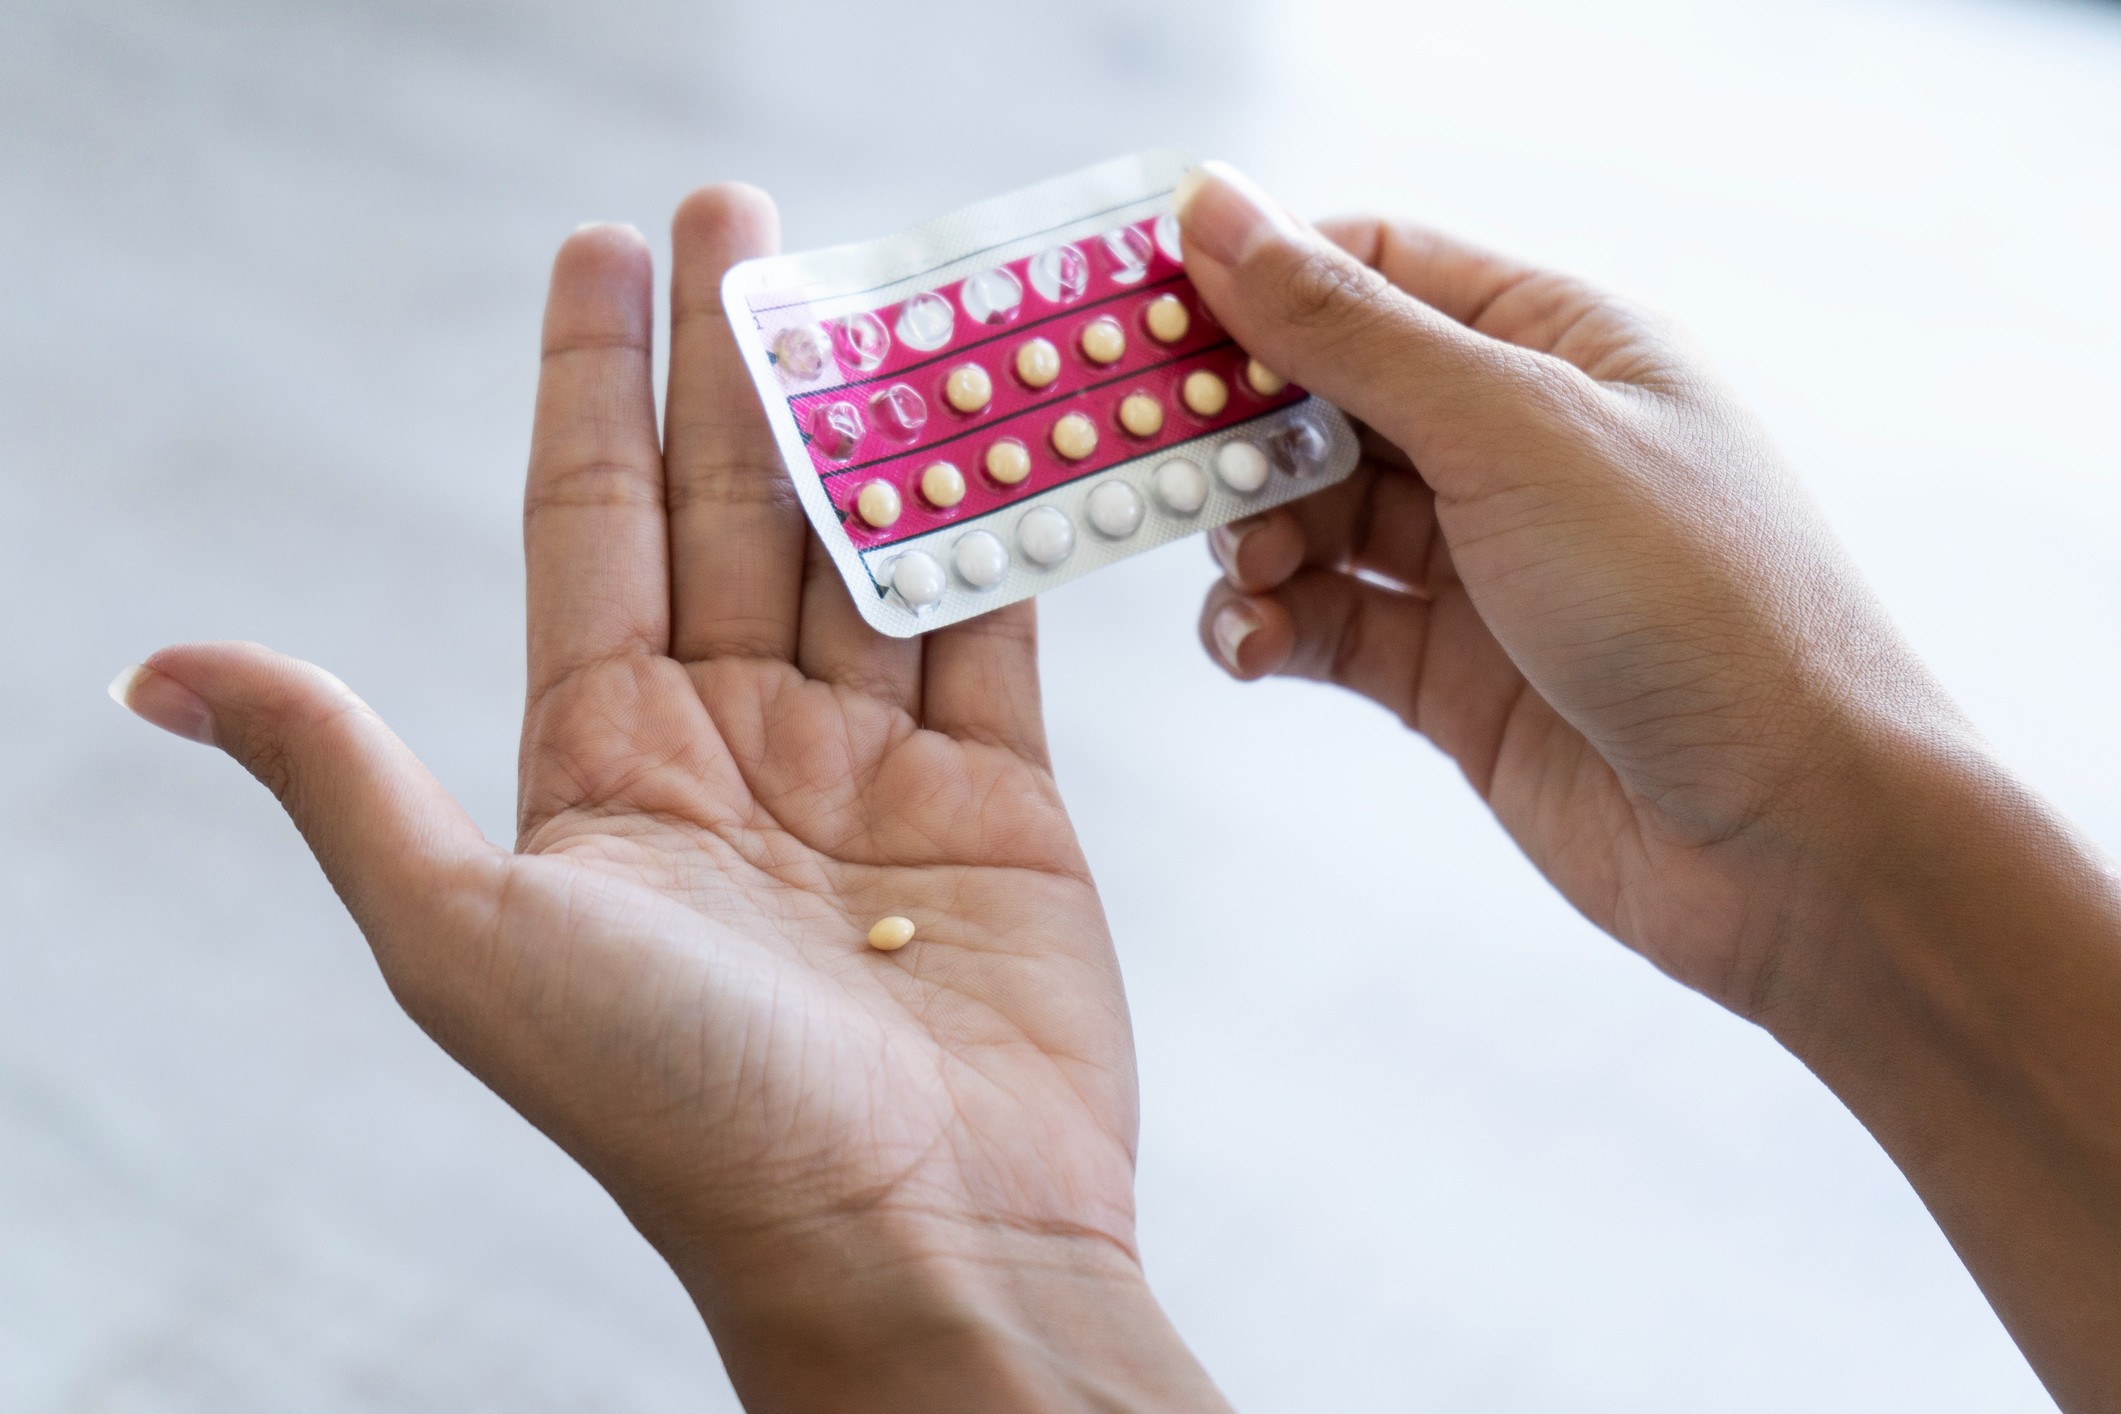 Pilulas anticoncepcionais melhores marcas